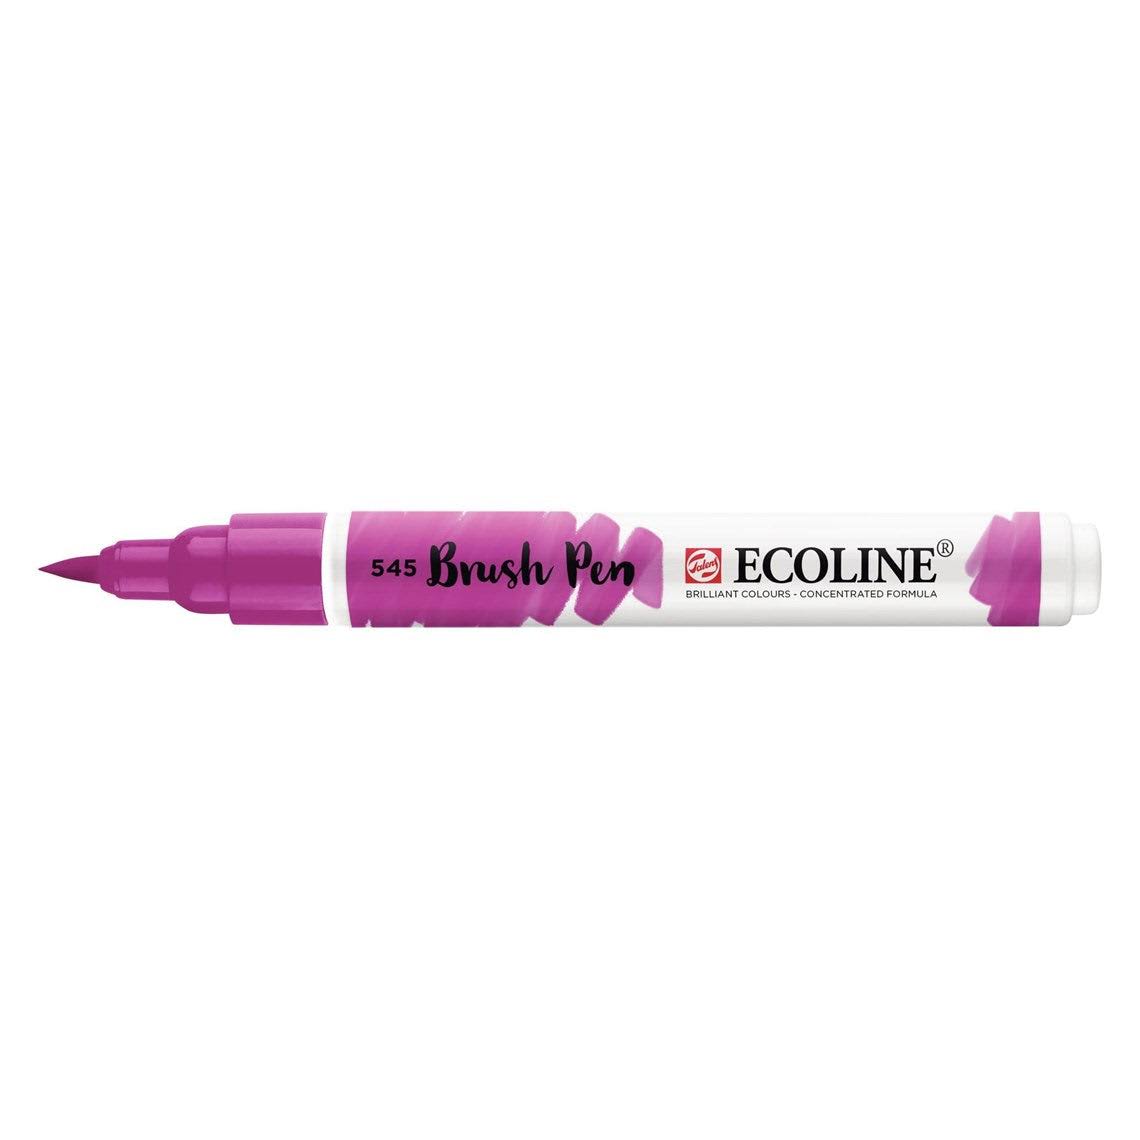 Talens Ecoline Liquid Watercolor 30ml Pink Beige 374